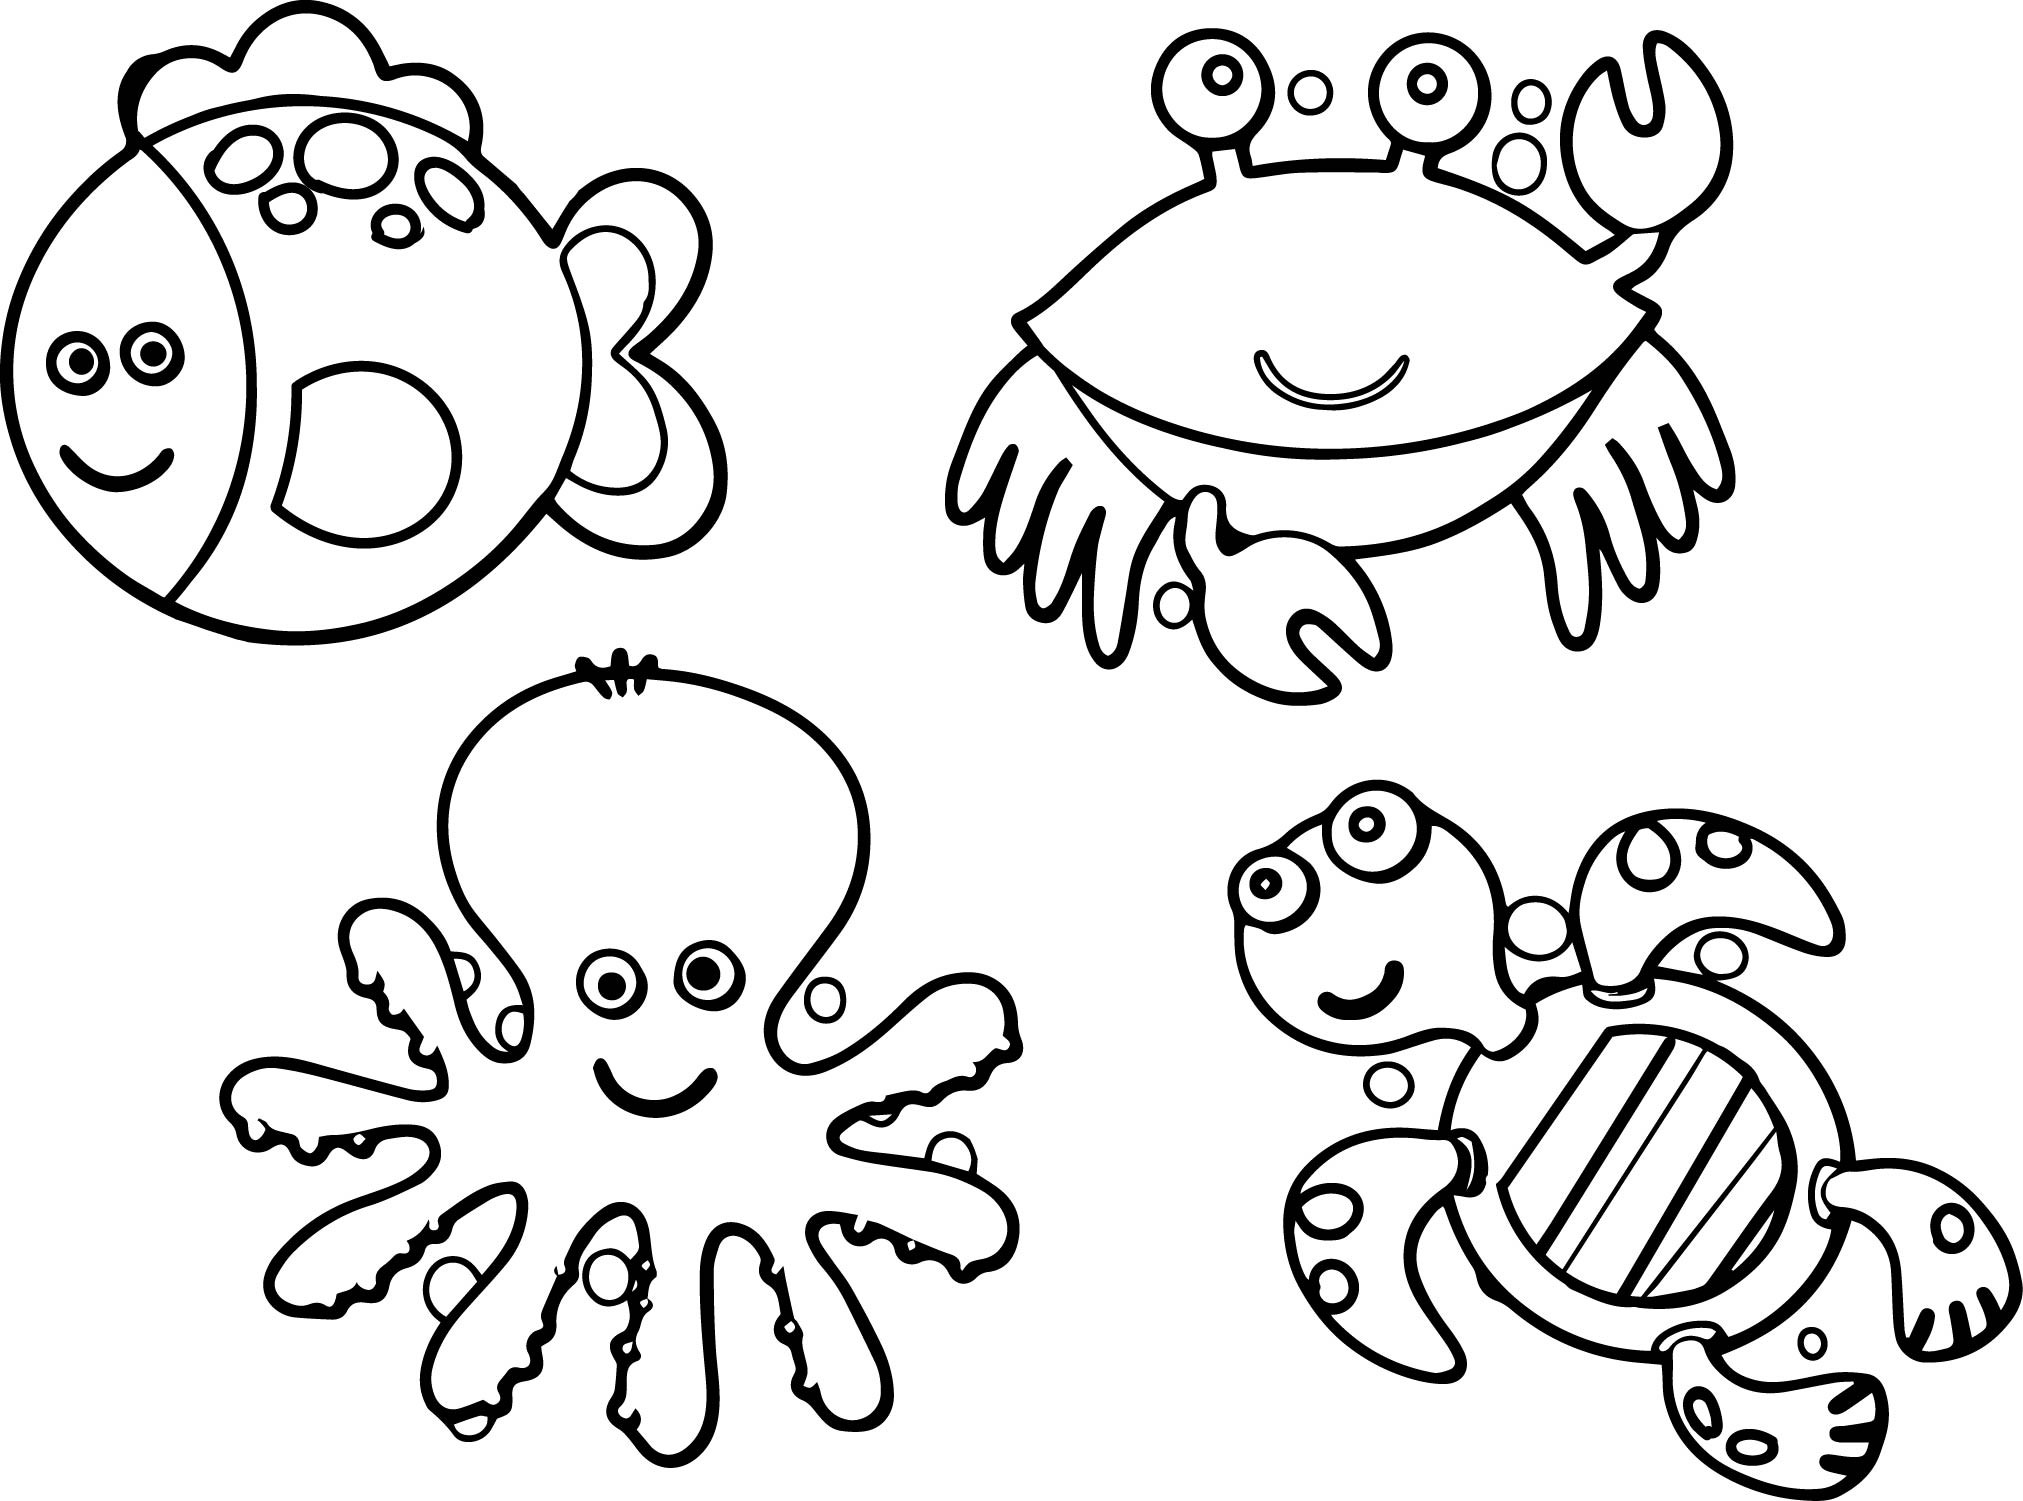 turtle-coloring-page-sea-ocean-animals